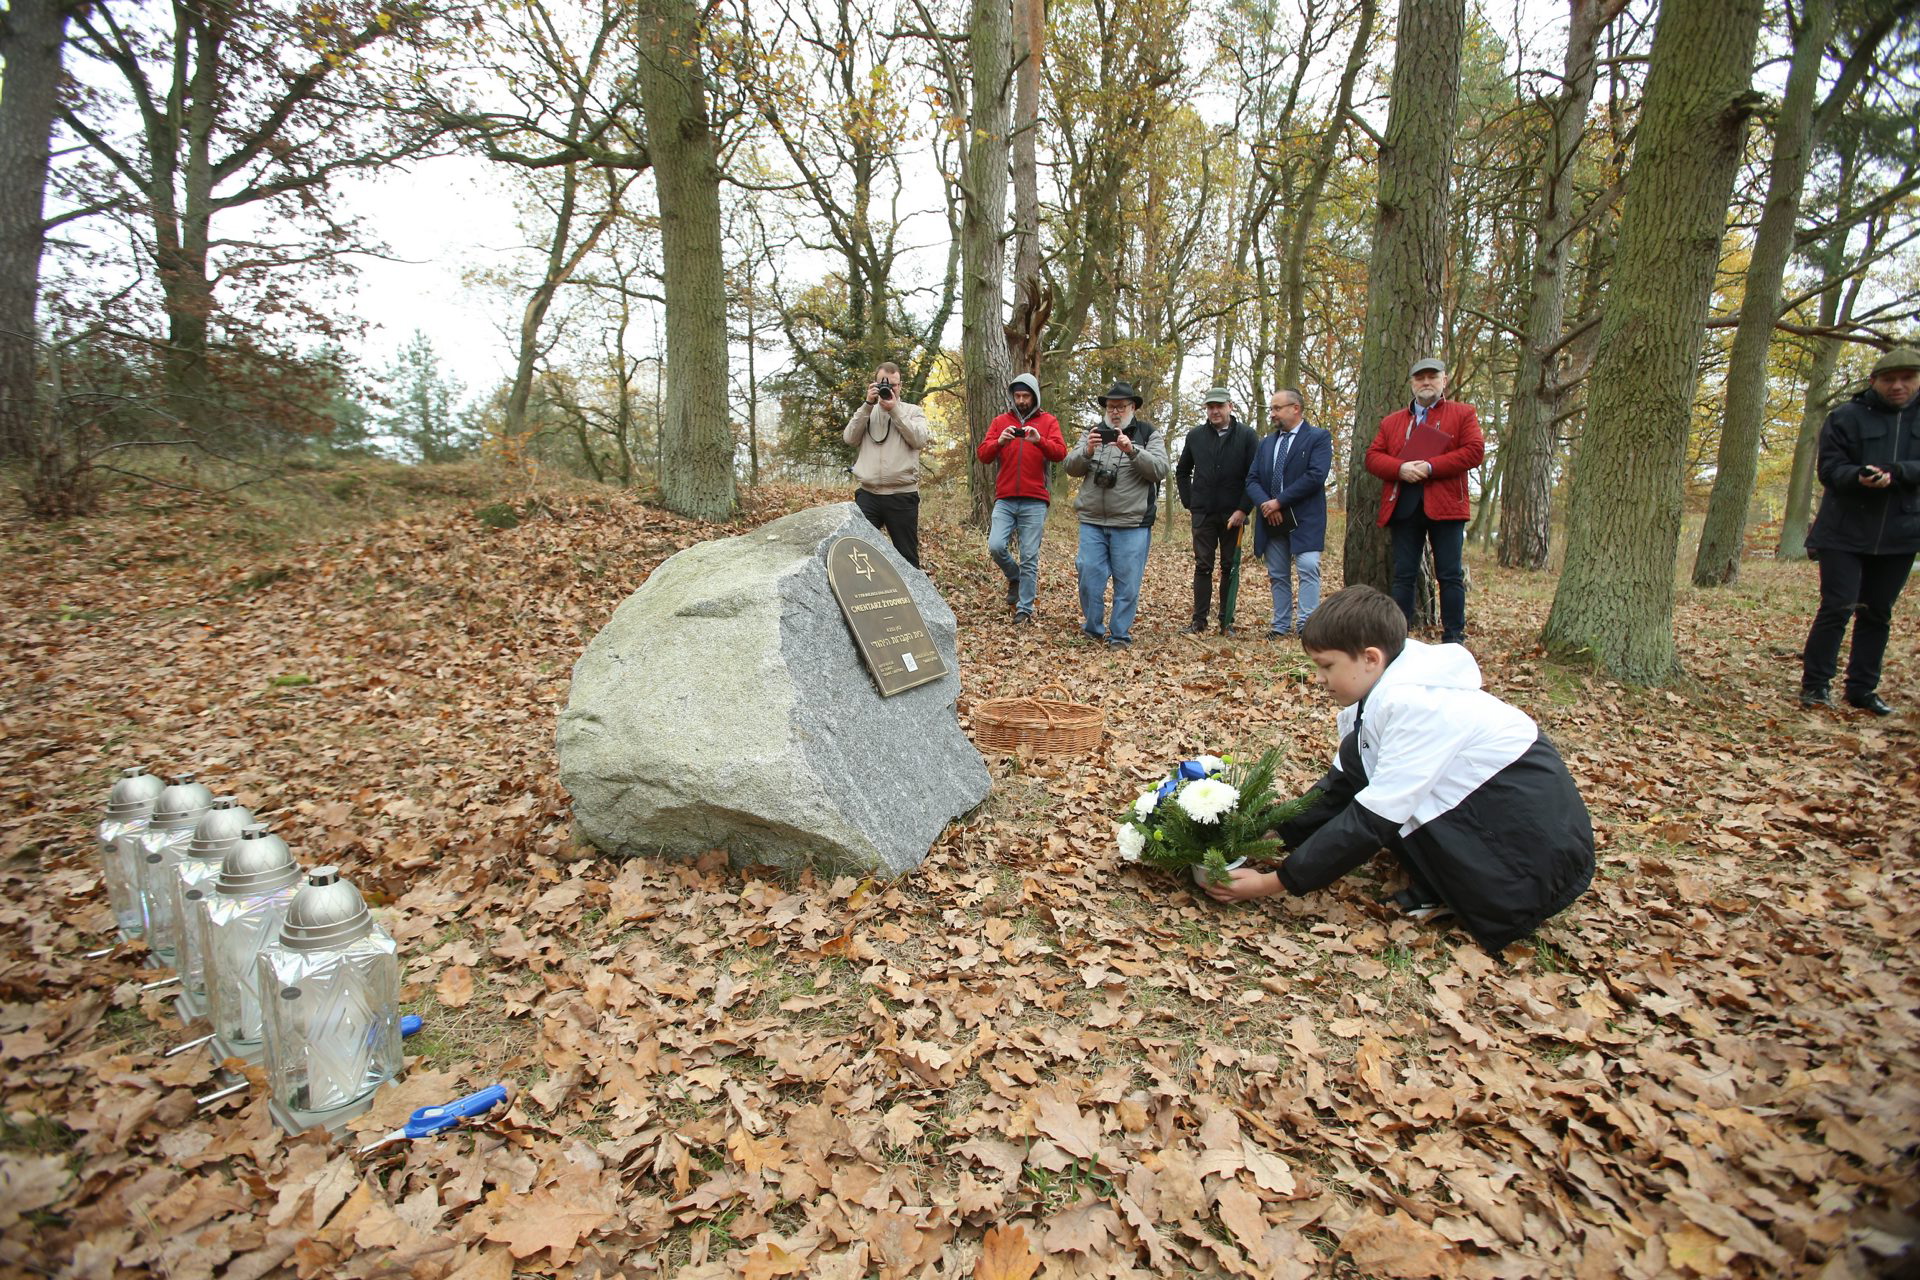 Chłopiec kładzie kwiaty pod kamieniem z tablicą upamiętniającą cmentarz żydowski w Stepnicy. Kilka osób robi mu zdjęcie.